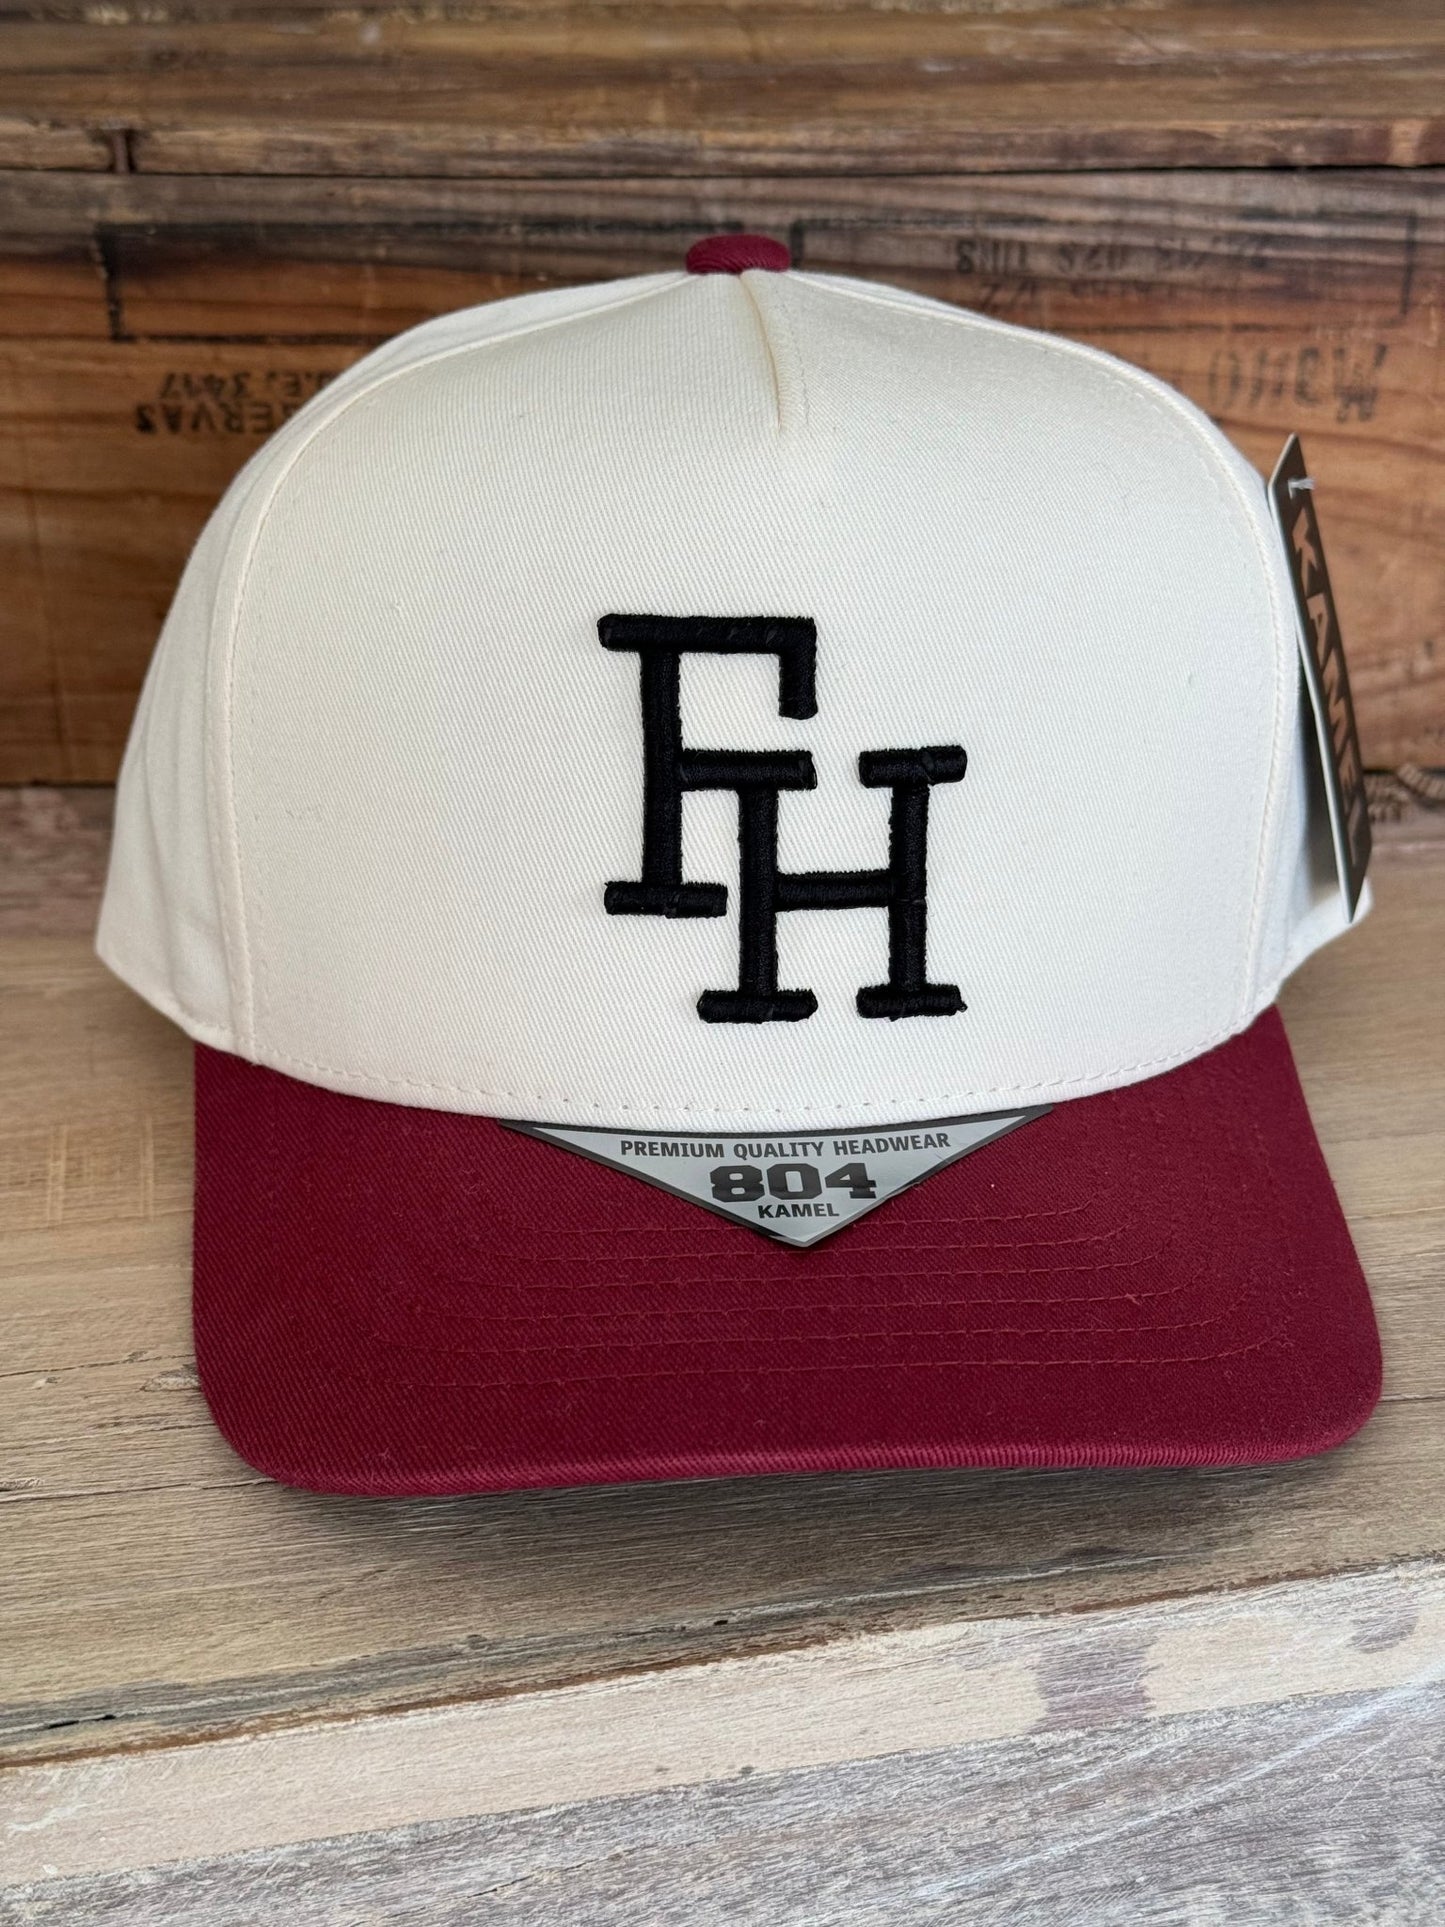 The FH Farmhouse Hat - The Farmhouse